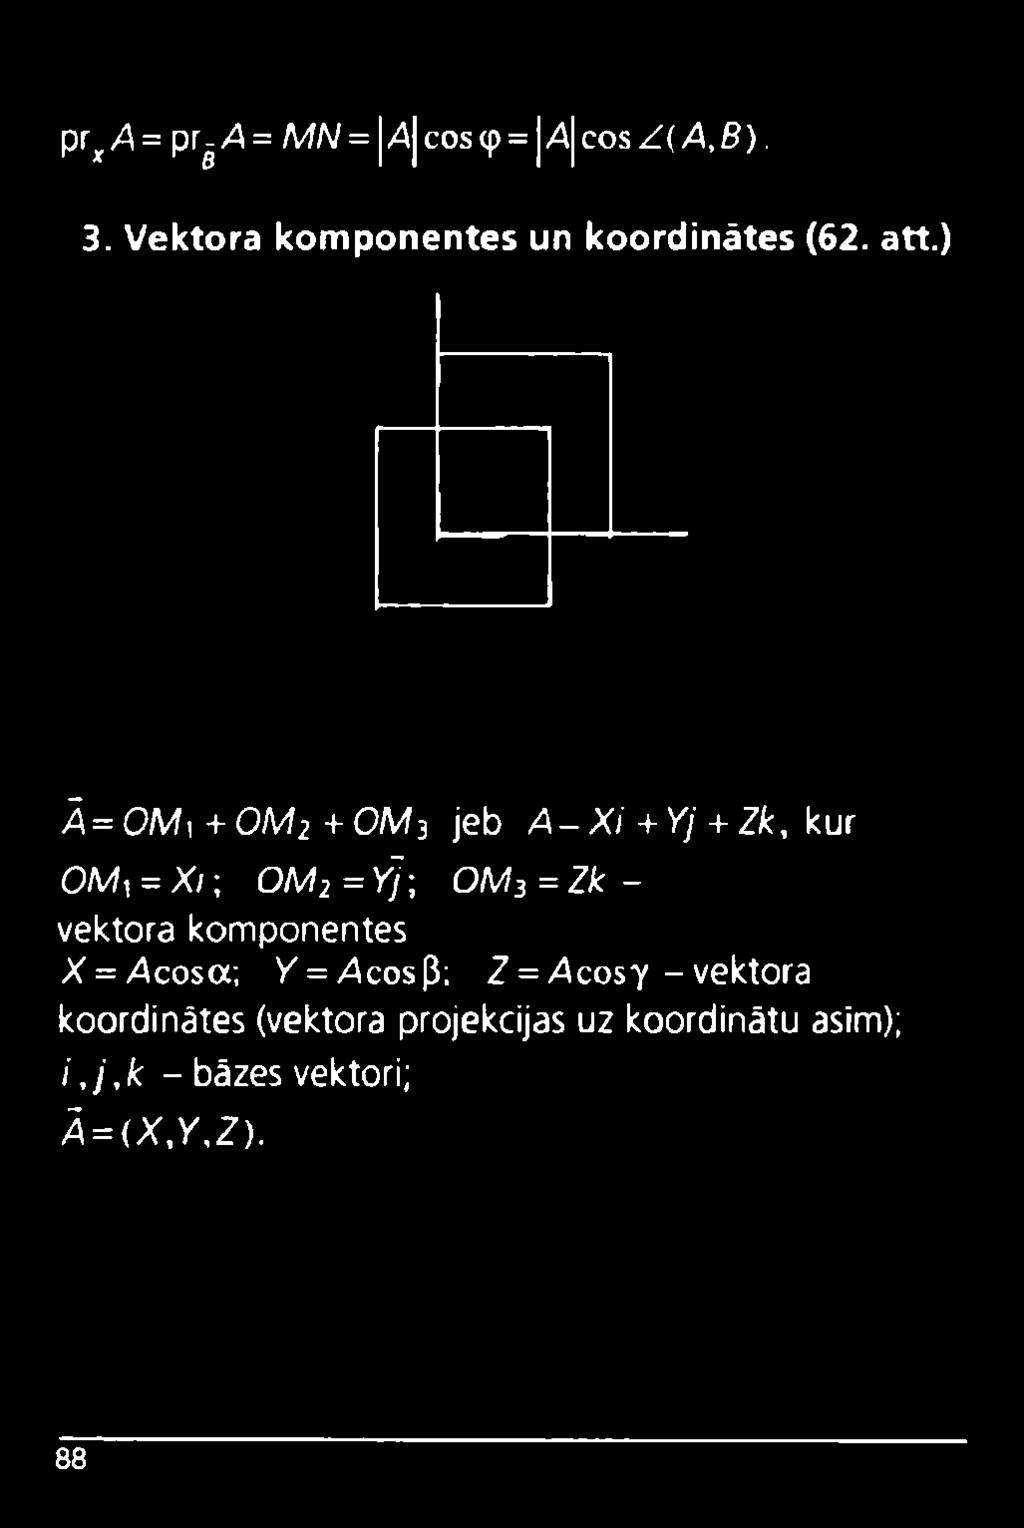 ) Ā=OMi+OM2+OM3 jeb A - Xi + Yj + Zk, kur O M, = X /; OM2=y]\ OM3 = Zk - vektora